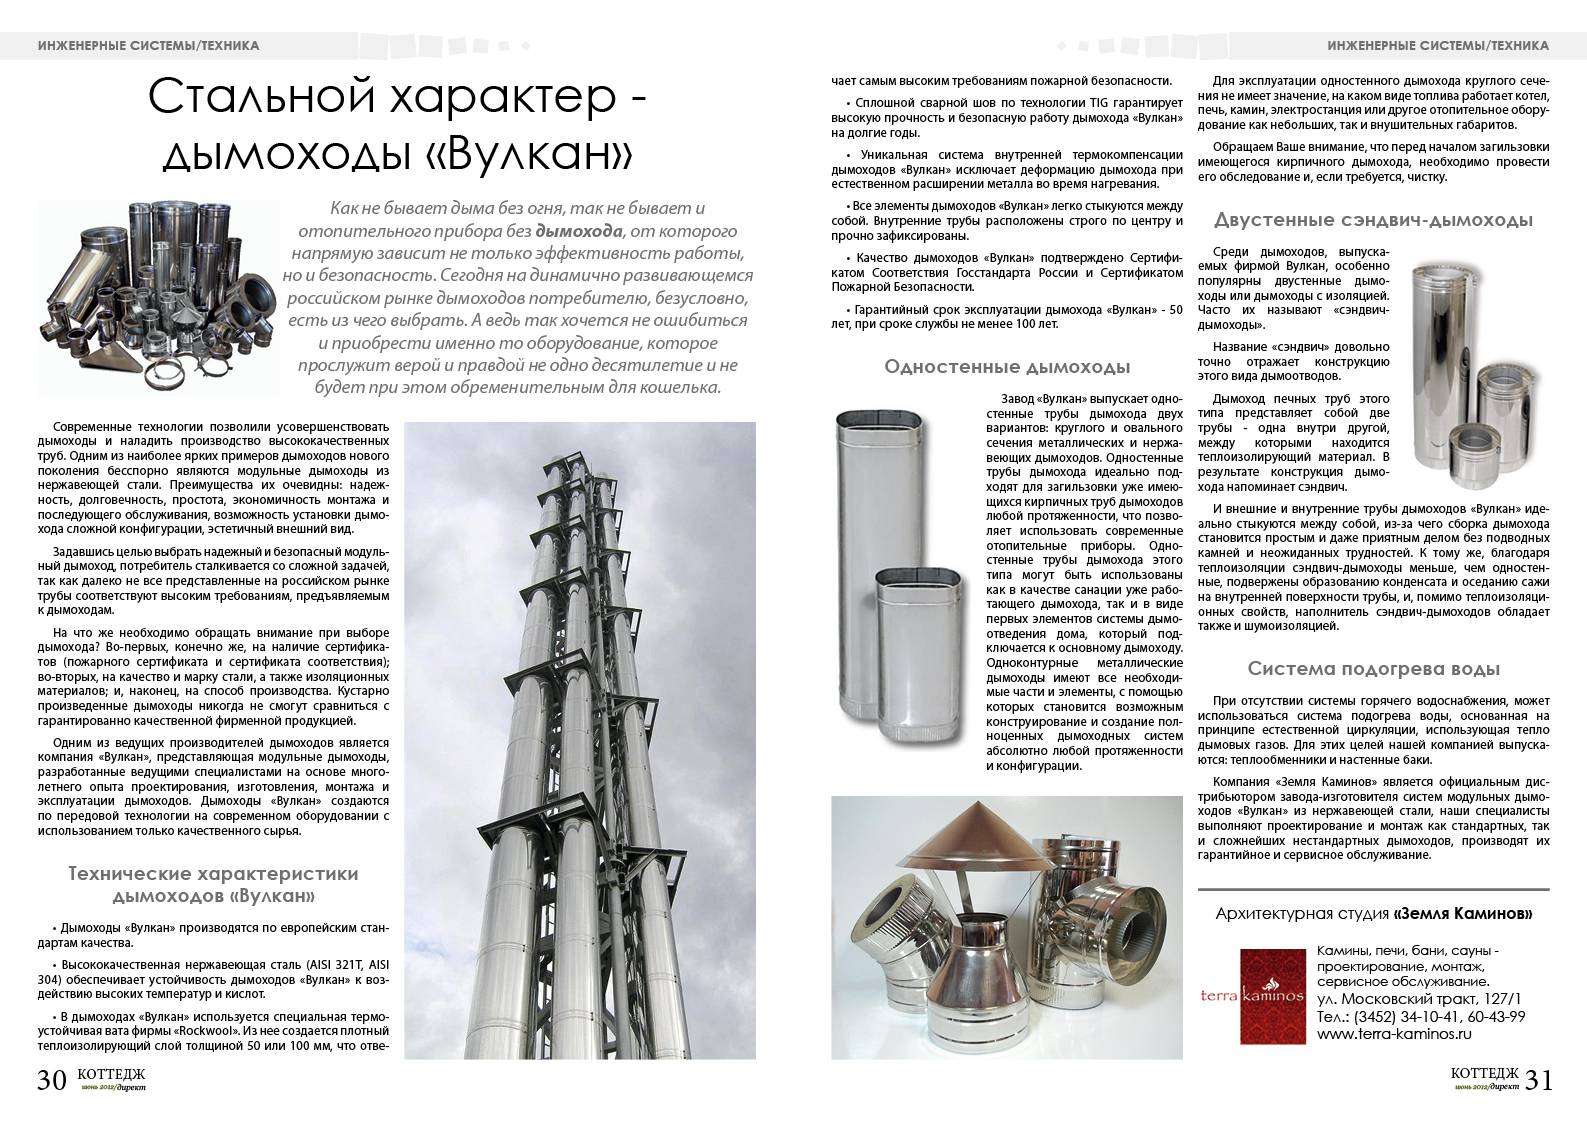 Обзор дымоходов российского производства: разбираемся какому бренду можно доверять